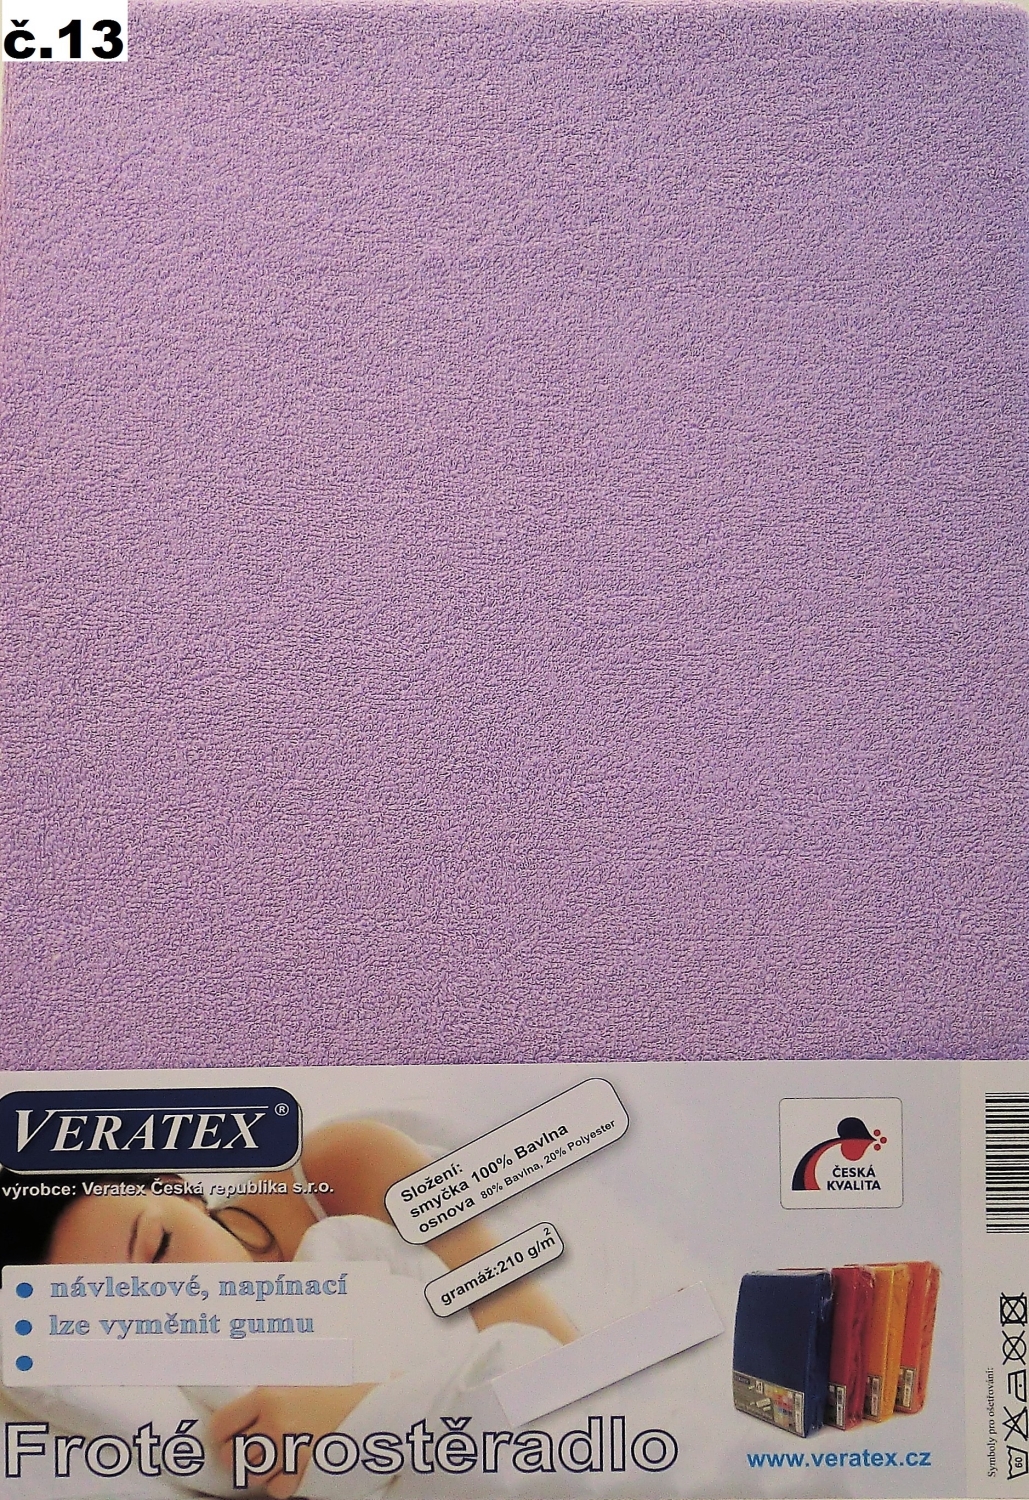 Veratex Froté prostěradlo 80 x 160 cm (č.13-fialková) 80 x 160 cm